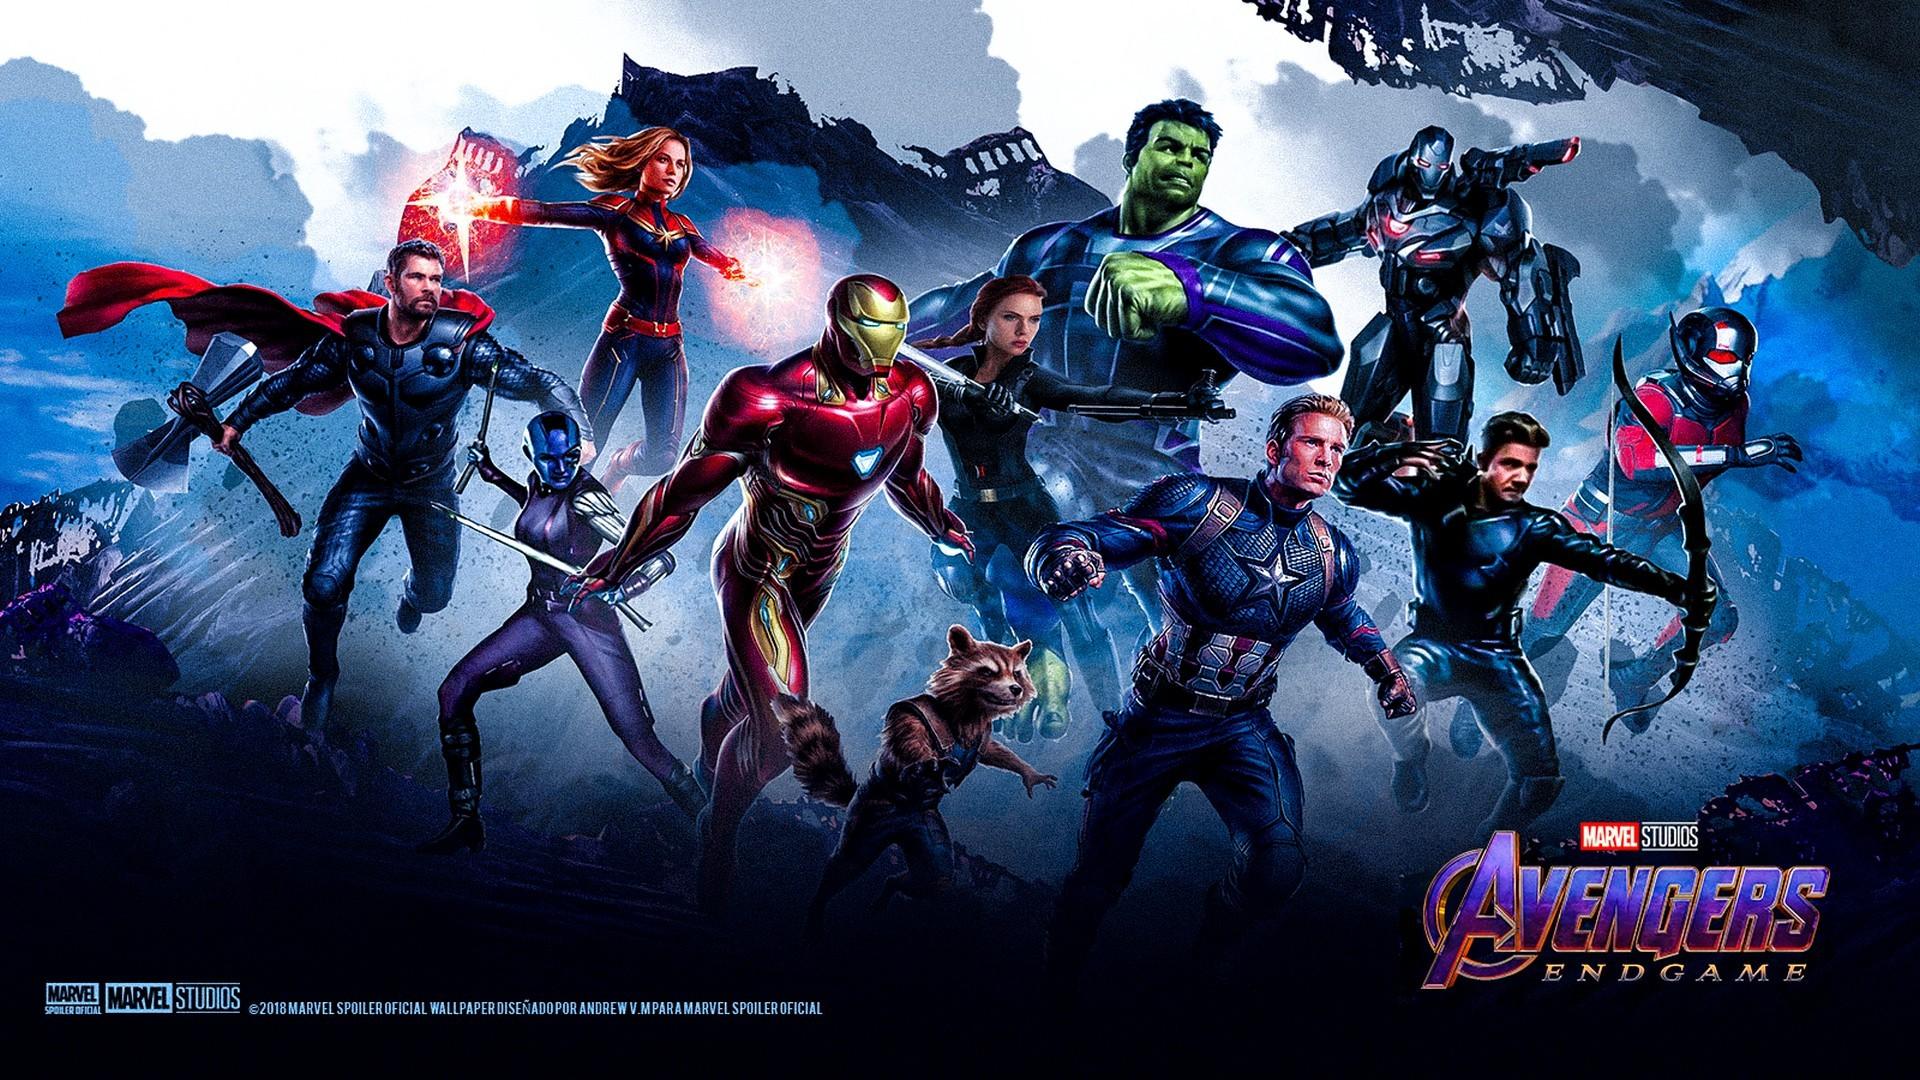 Avengers Endgame 2019 Wallpaper HD Movie Poster